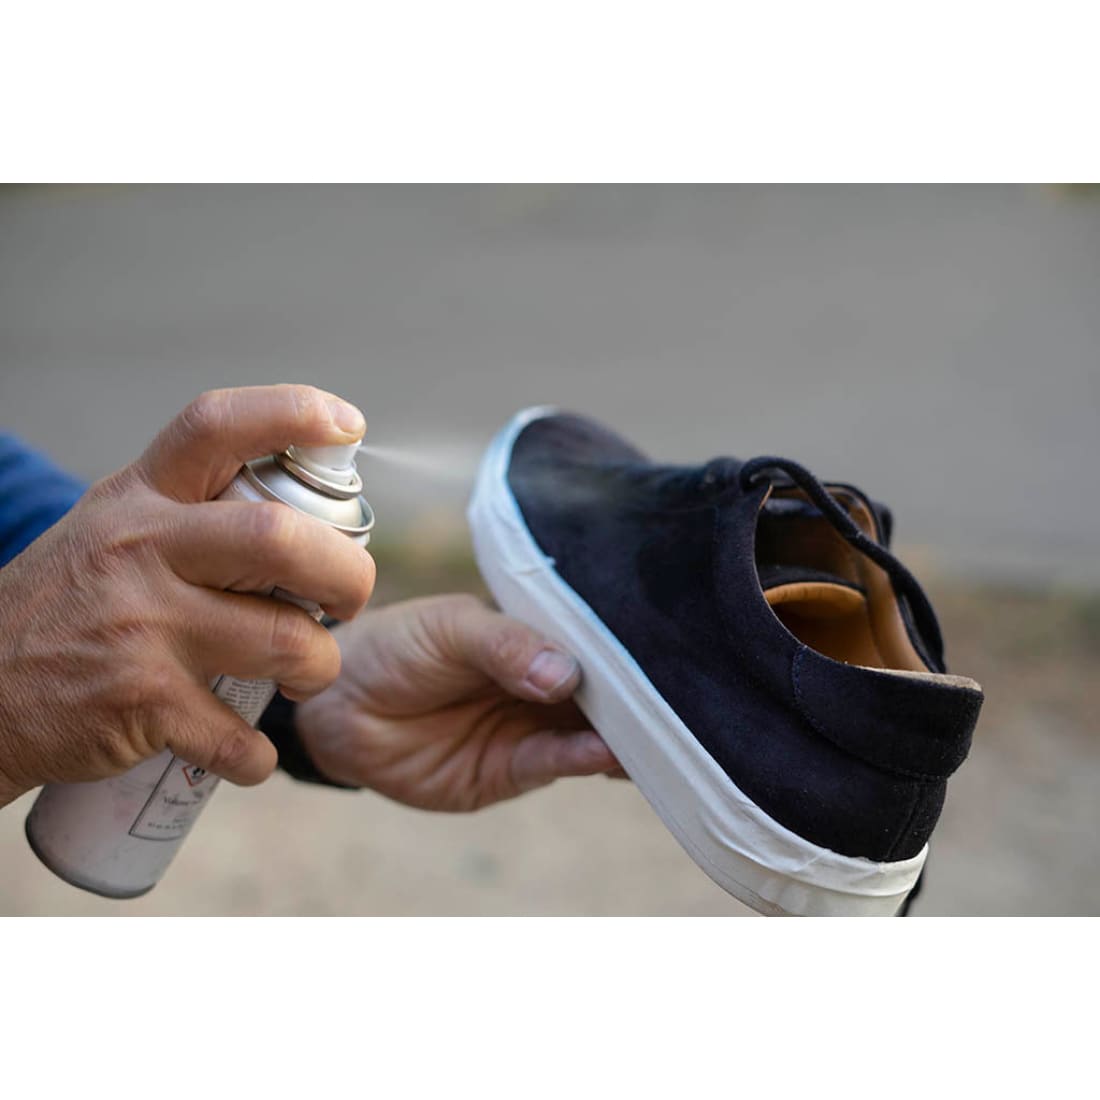 Imperméabilisant chaussures : comment ça marche ?